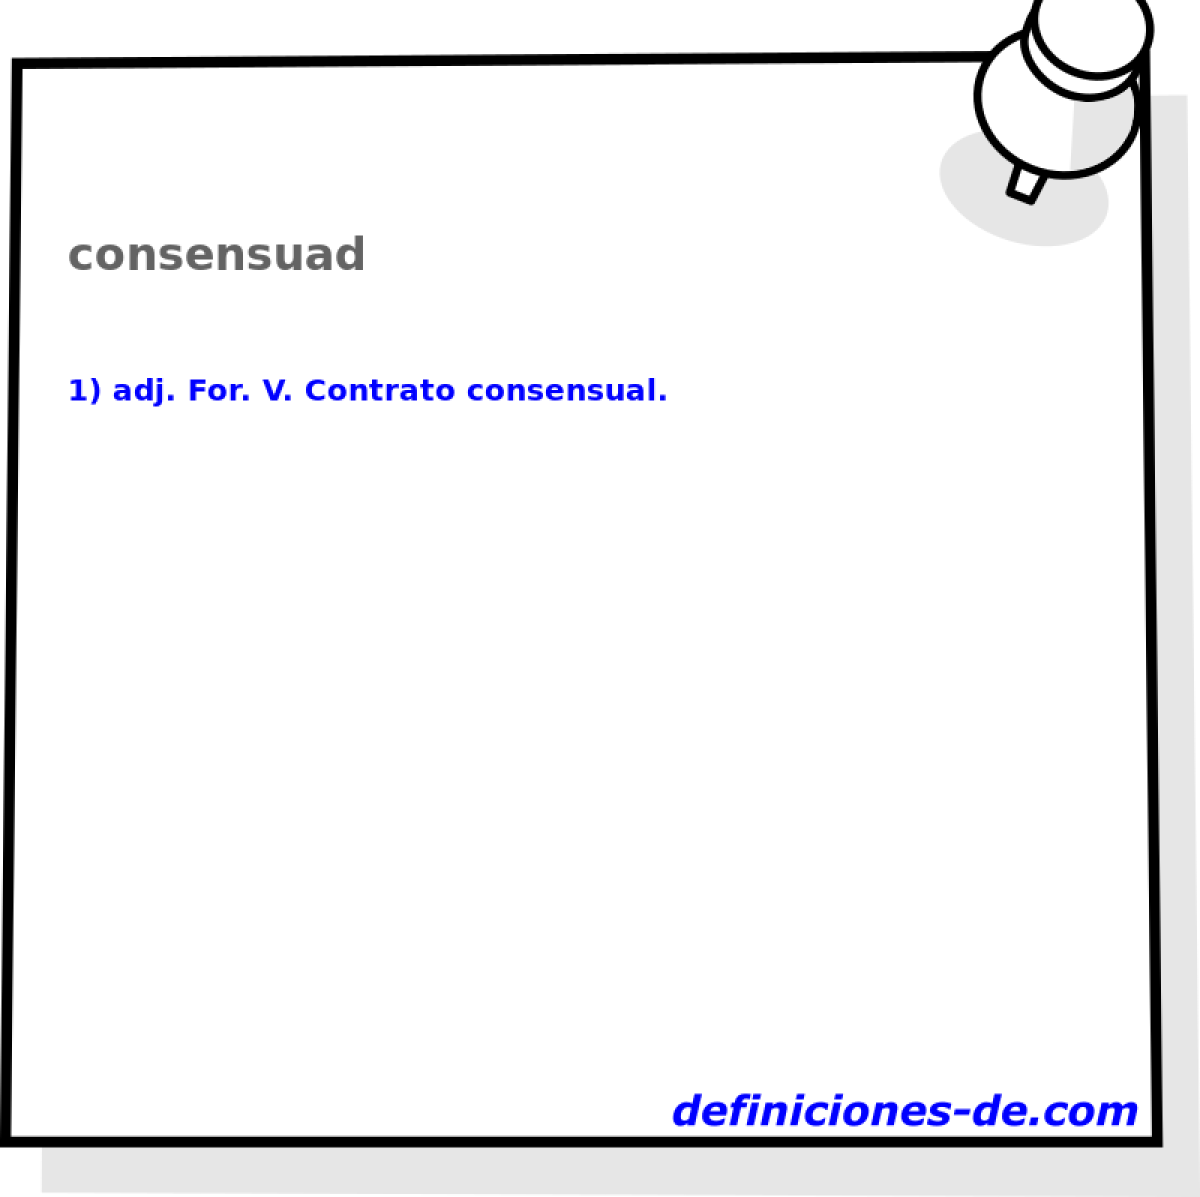 consensuad 